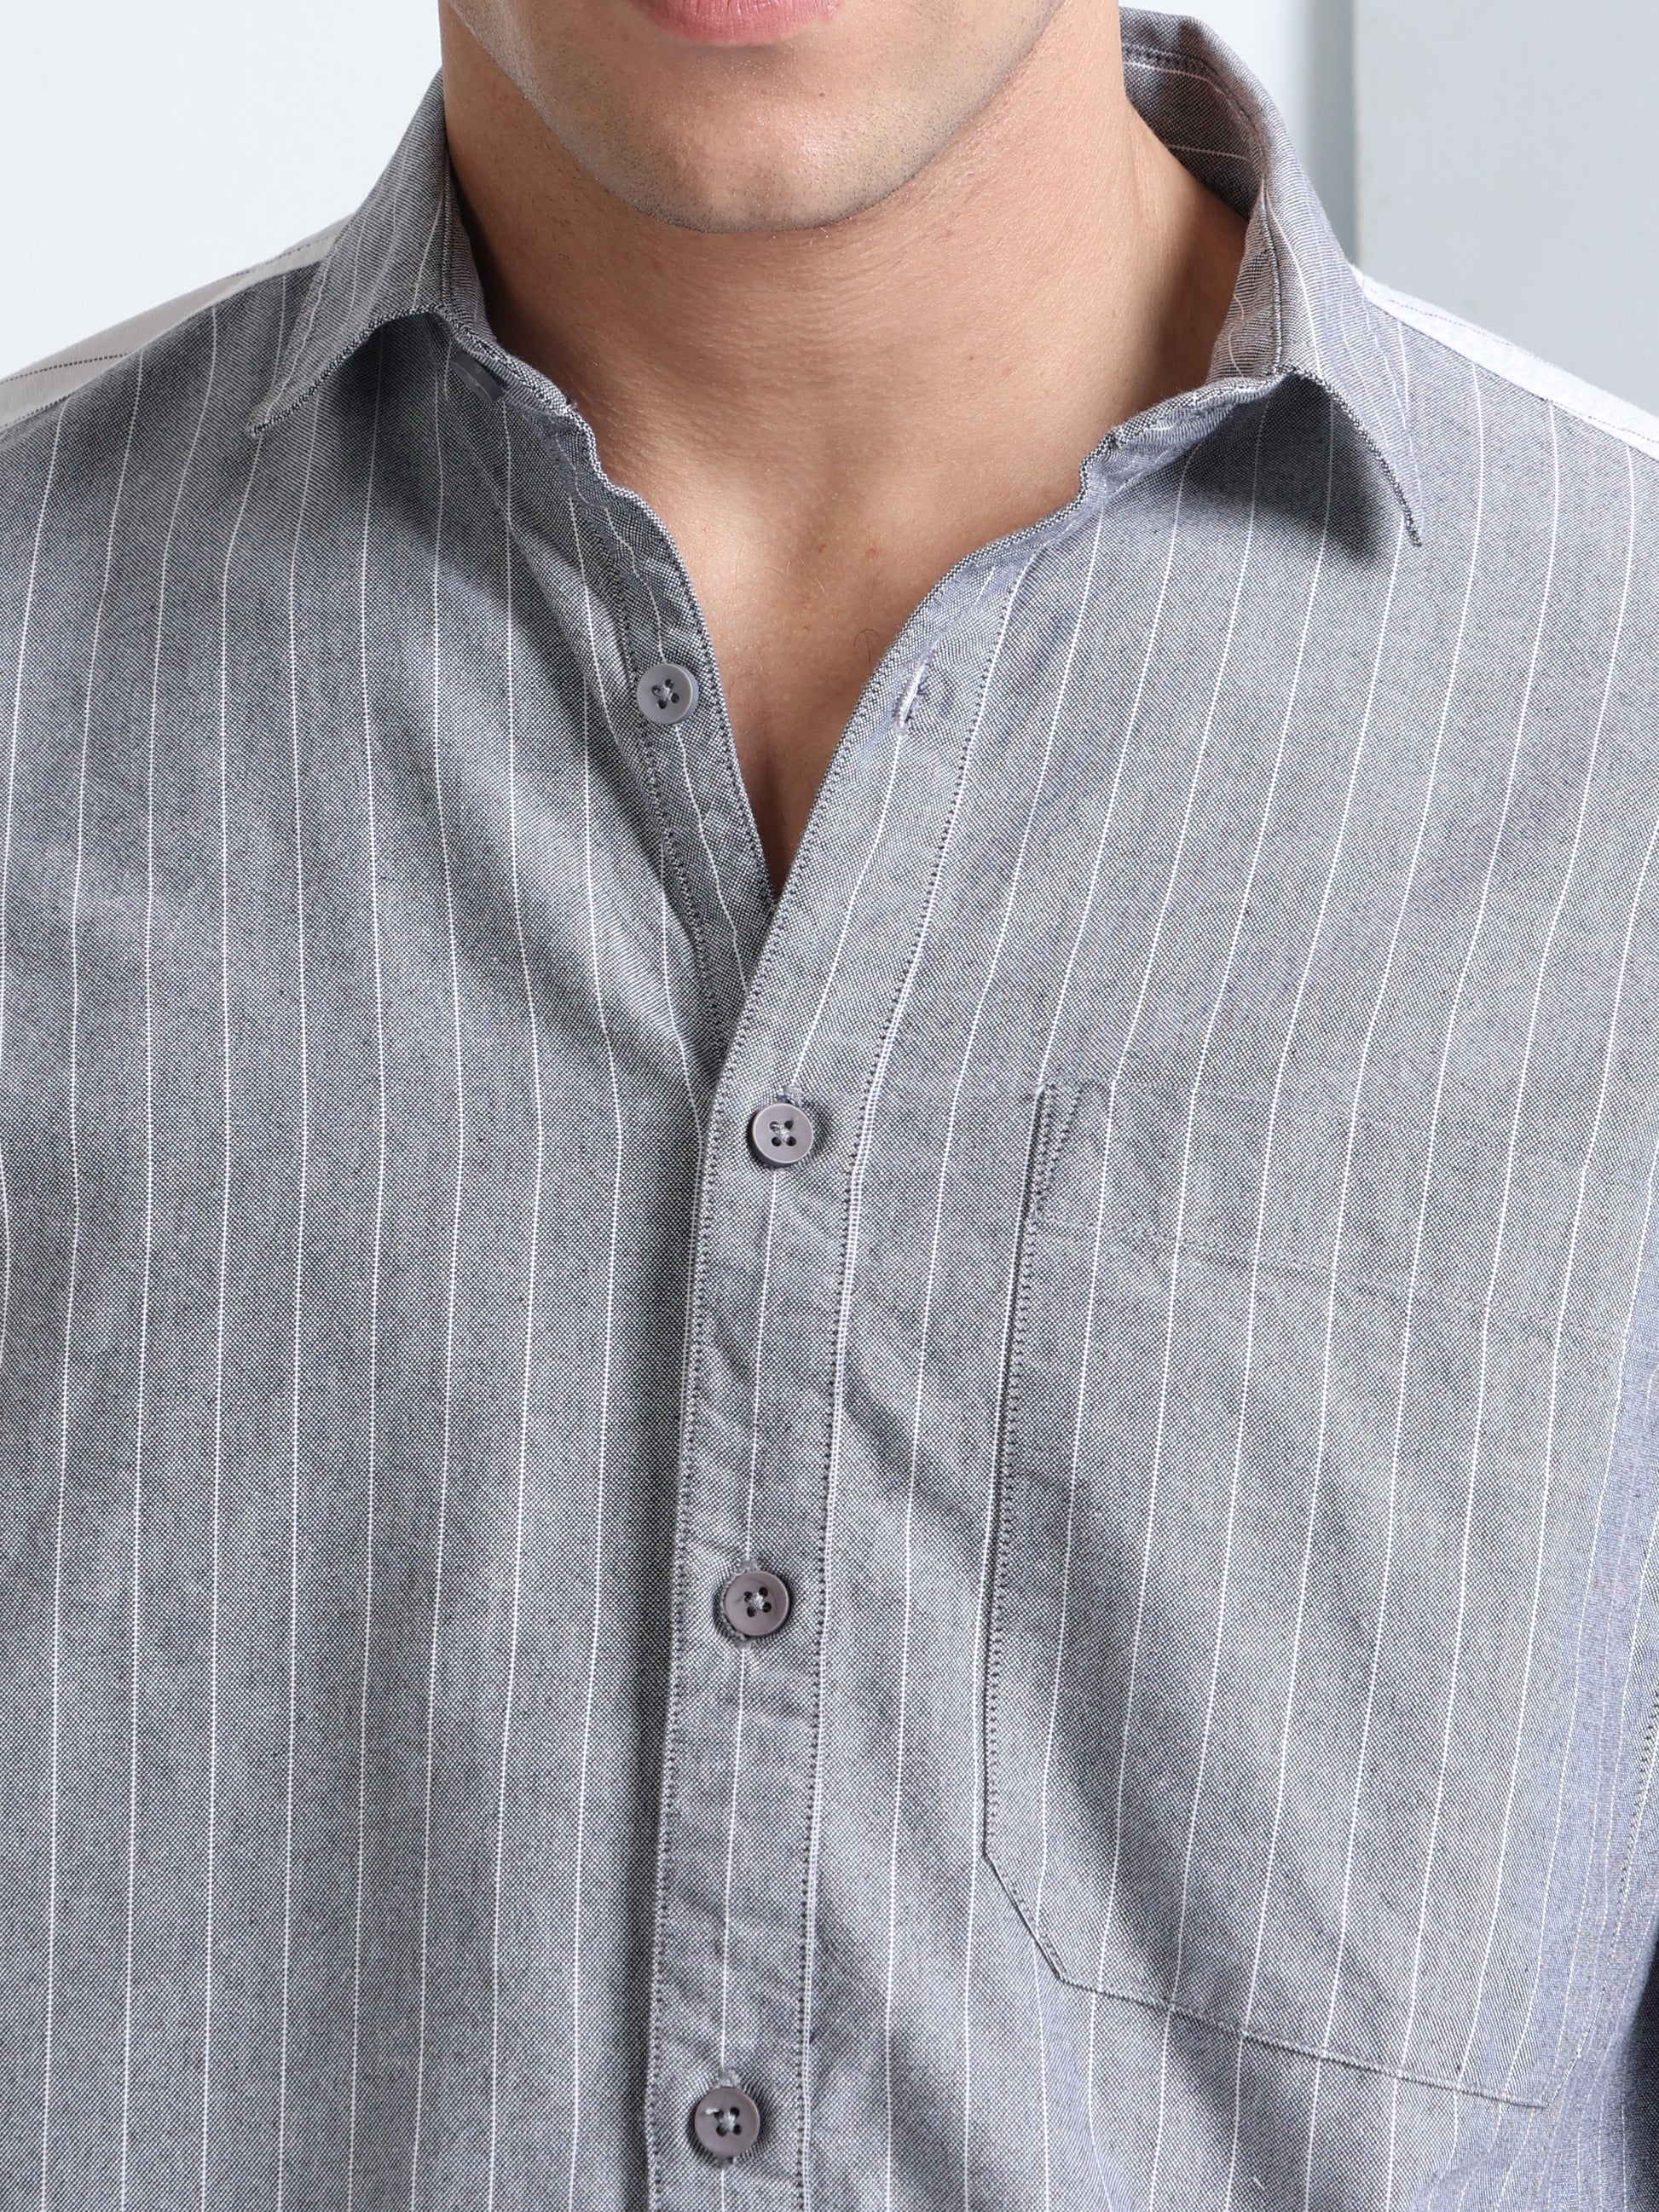 Buy Panel Stylish Full Sleeve Shirt For Men Online.